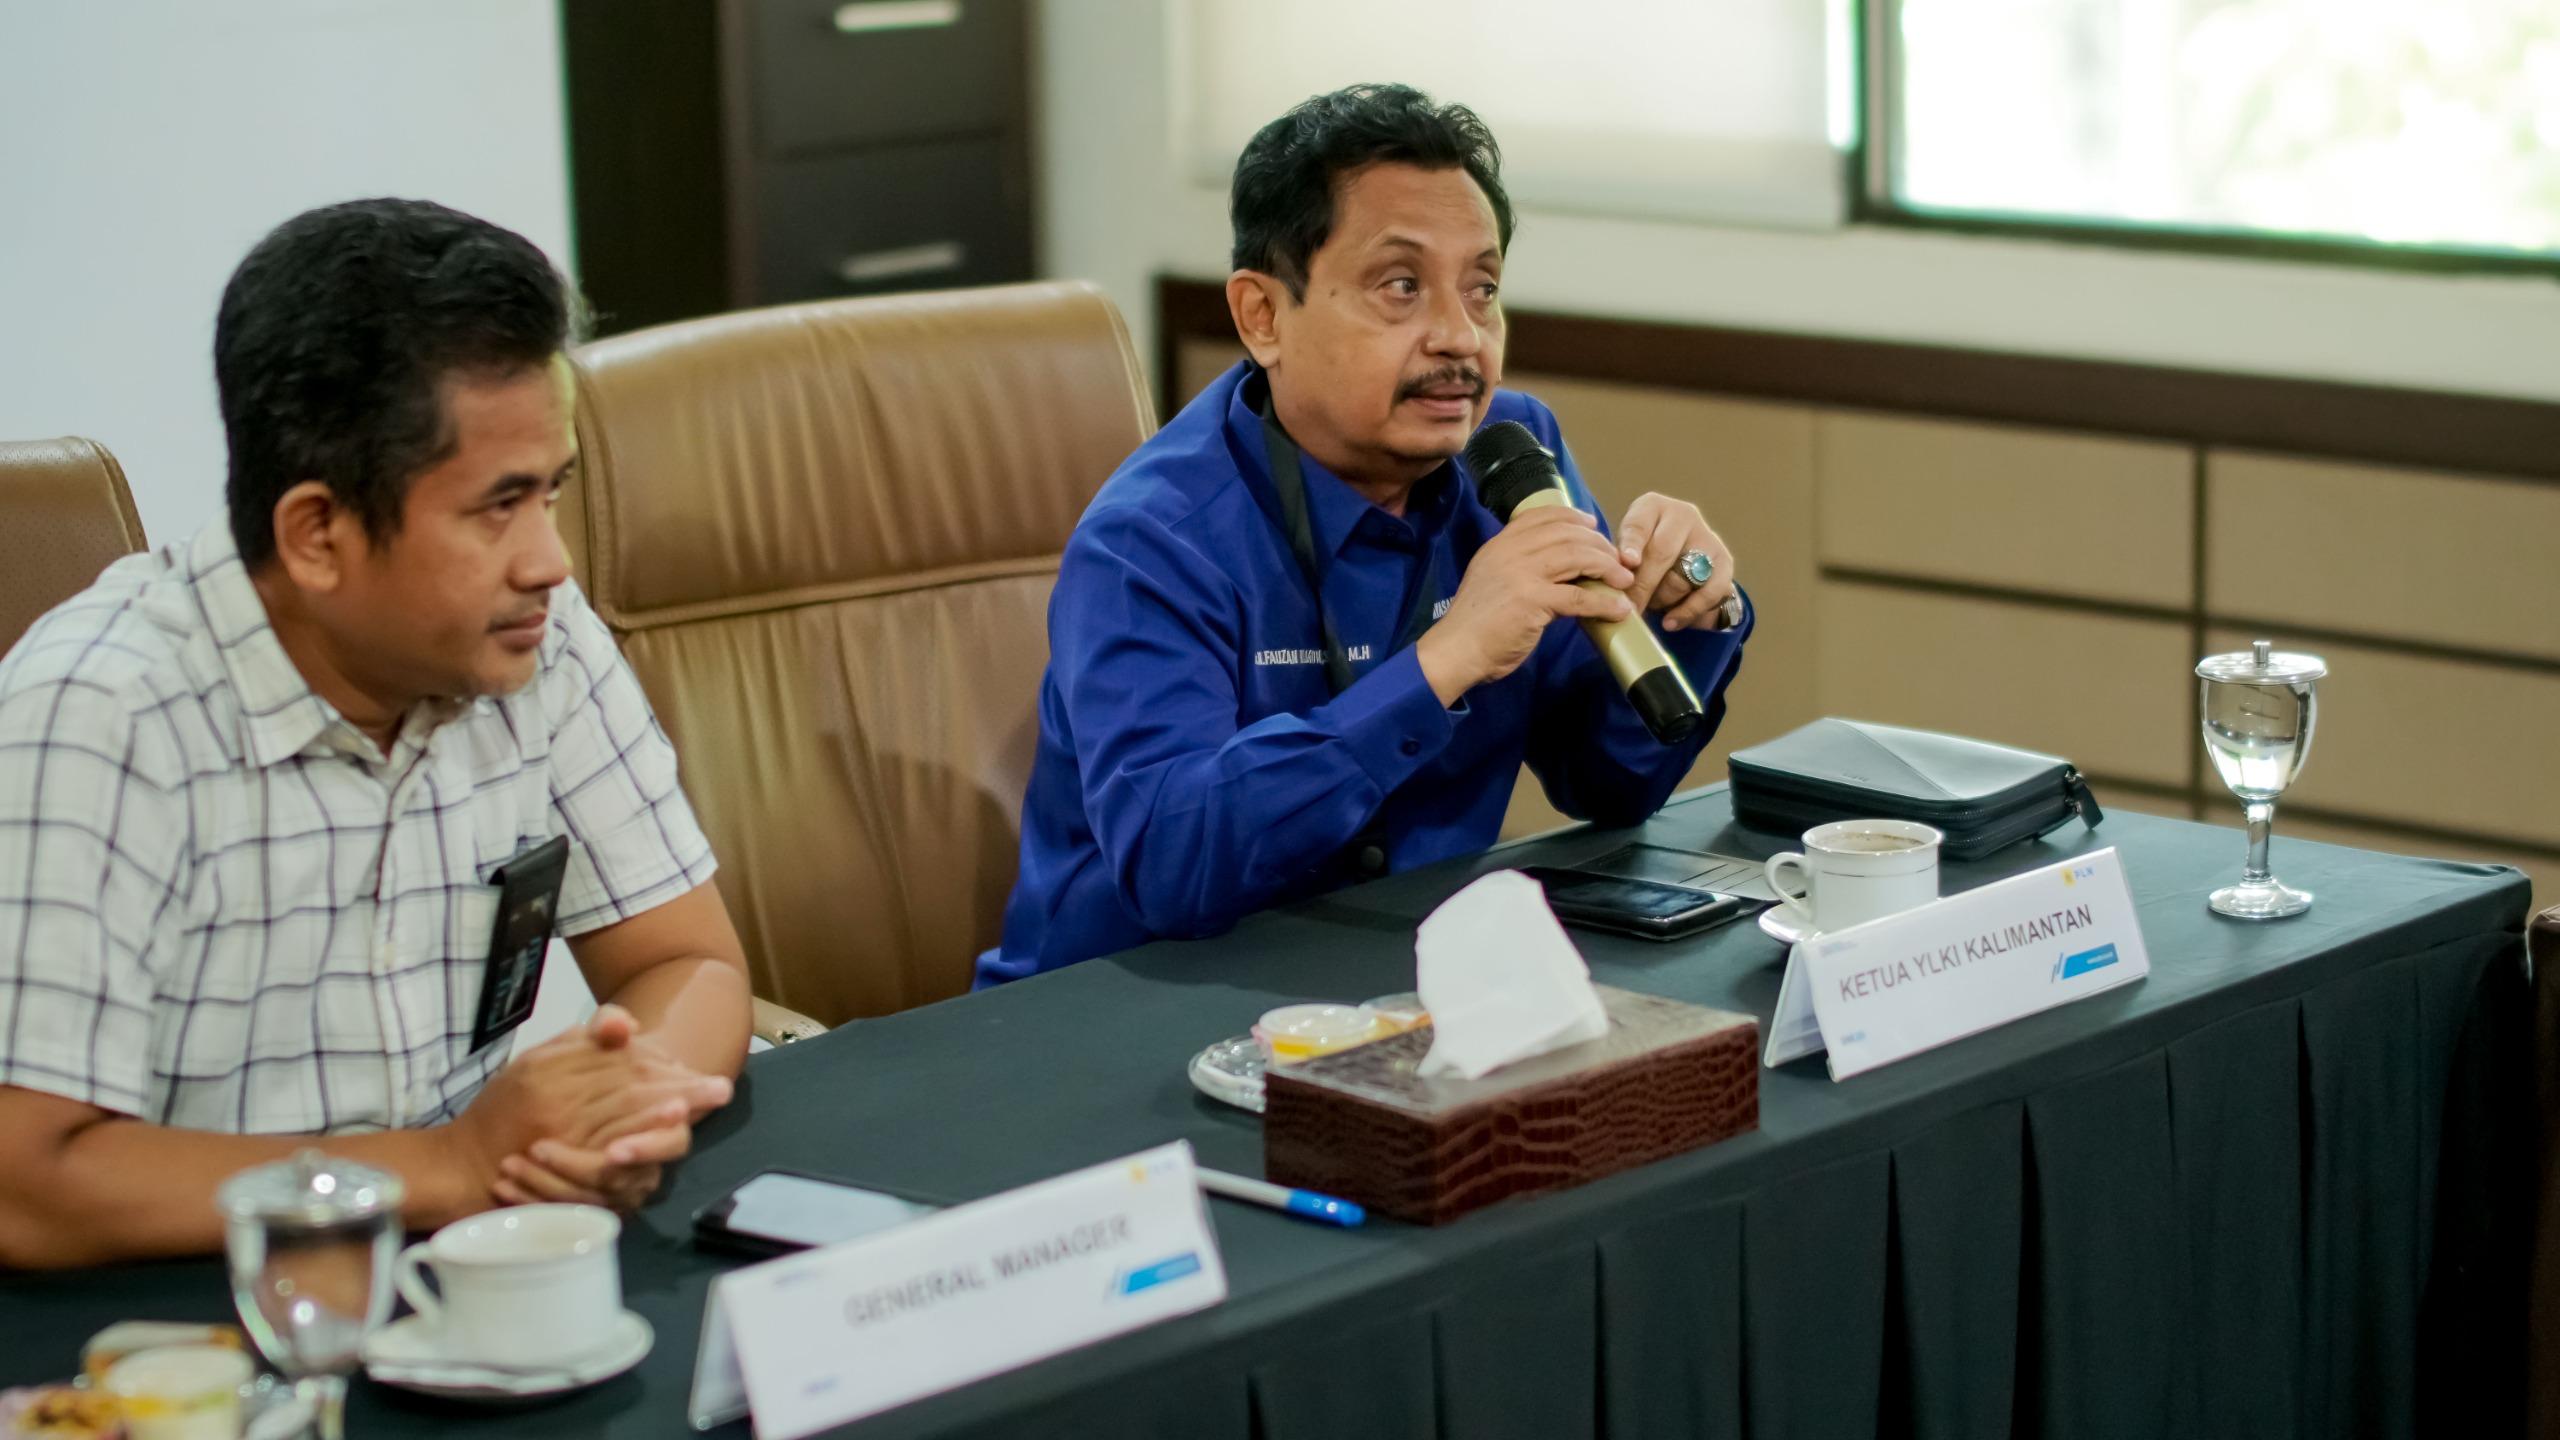 Ketua YLKI Kalimantan Dr. H. Fauzan Ramon S.H, M.H, saat memberikan paparan tentang Perlindungan Konsumen pada saat audiensi